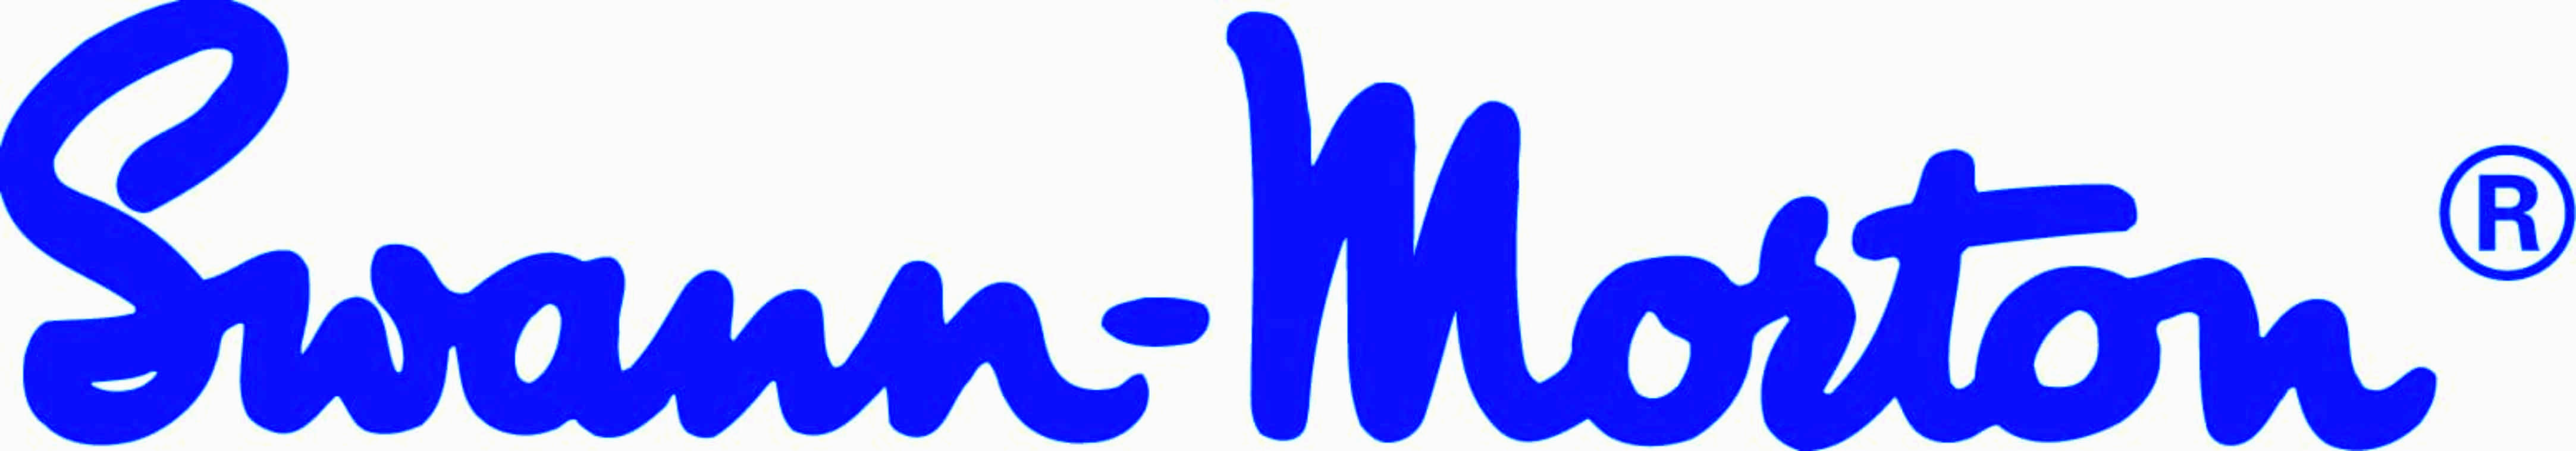 Swann Morton logo